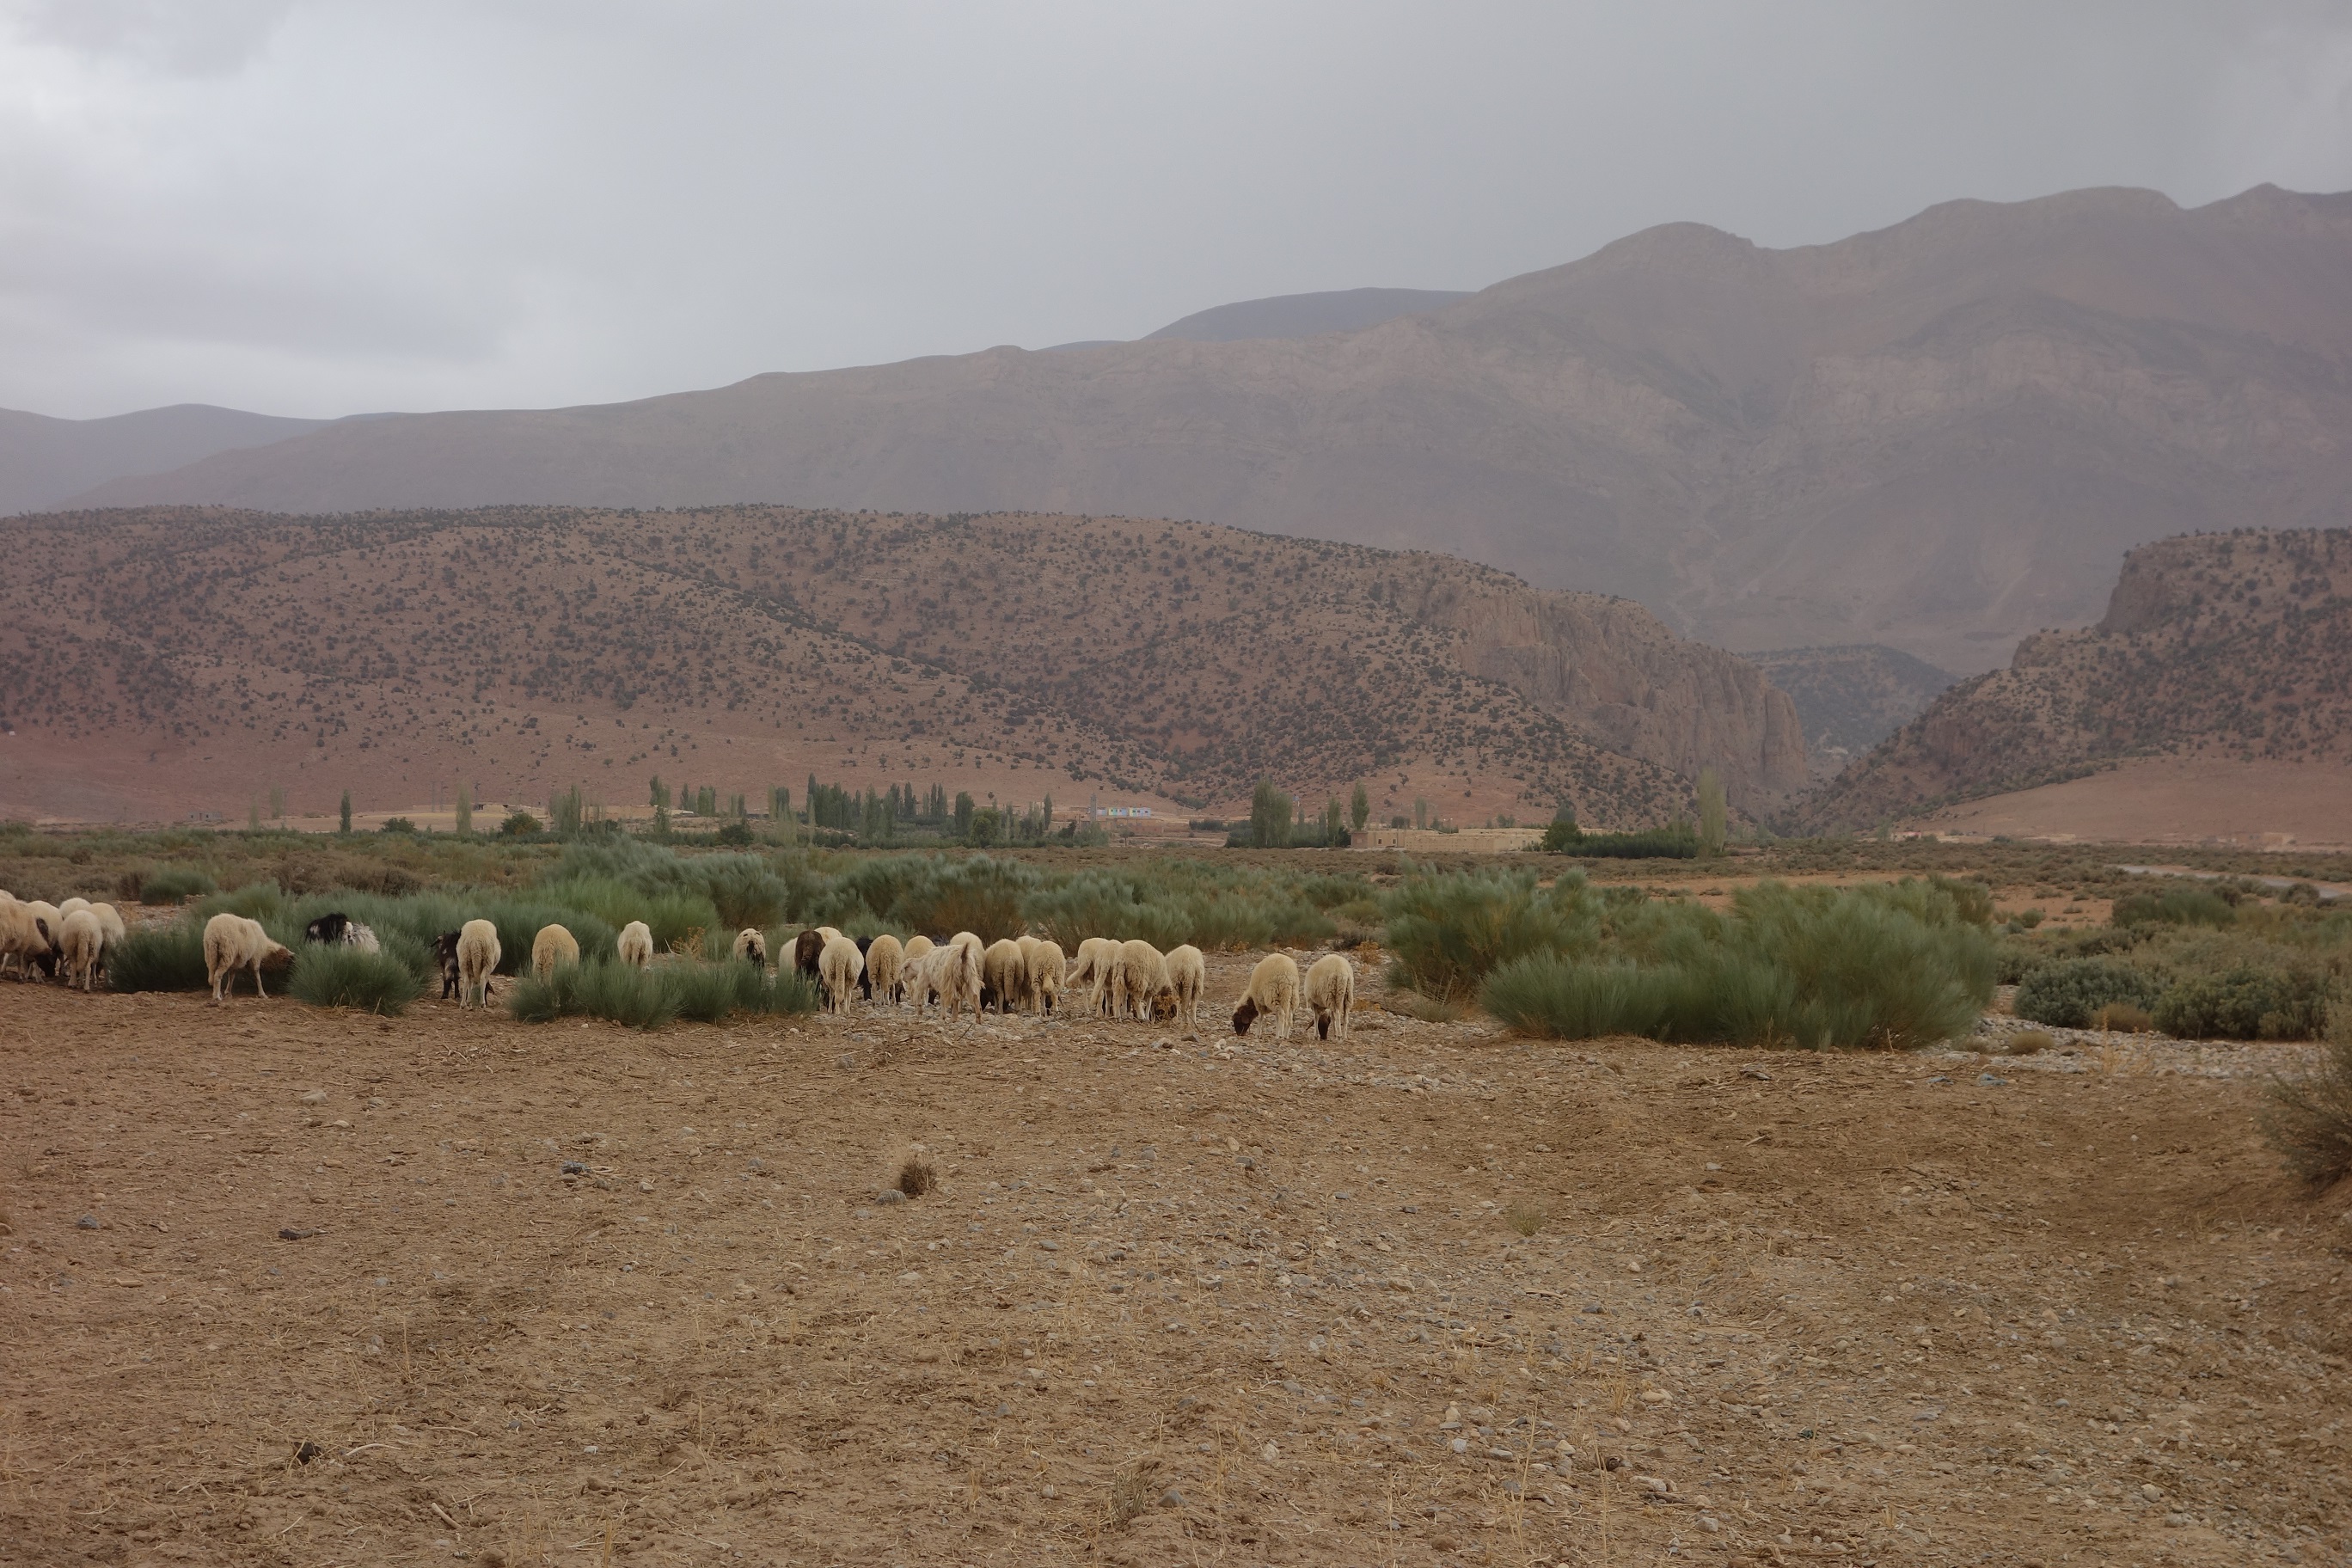 Un troupeau rentrant à Taouraoute. On voit qu'il y a toujours des arbres dans les pans de montagne